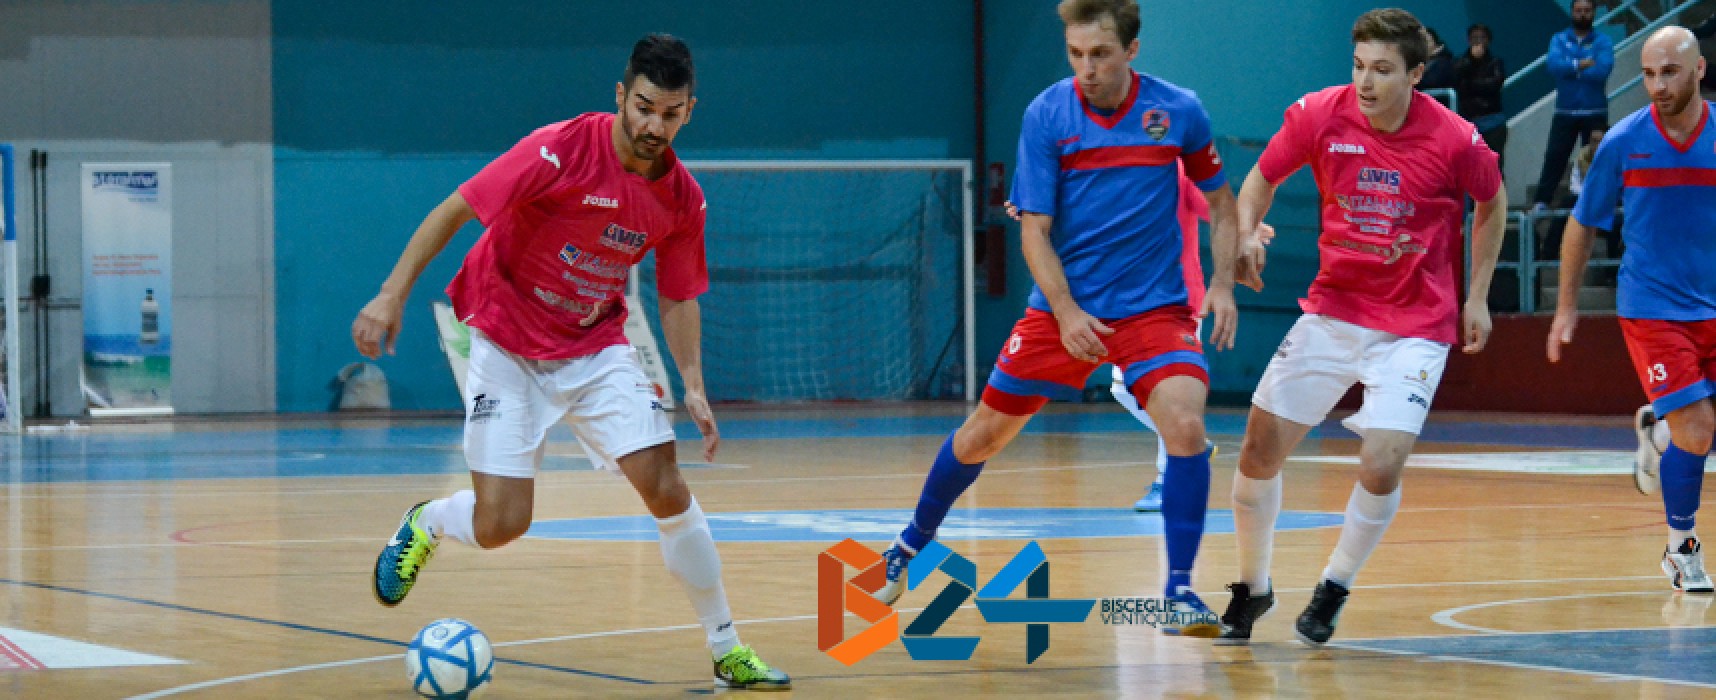 Futsal Bisceglie, cinque gol al Catania e primato mantenuto